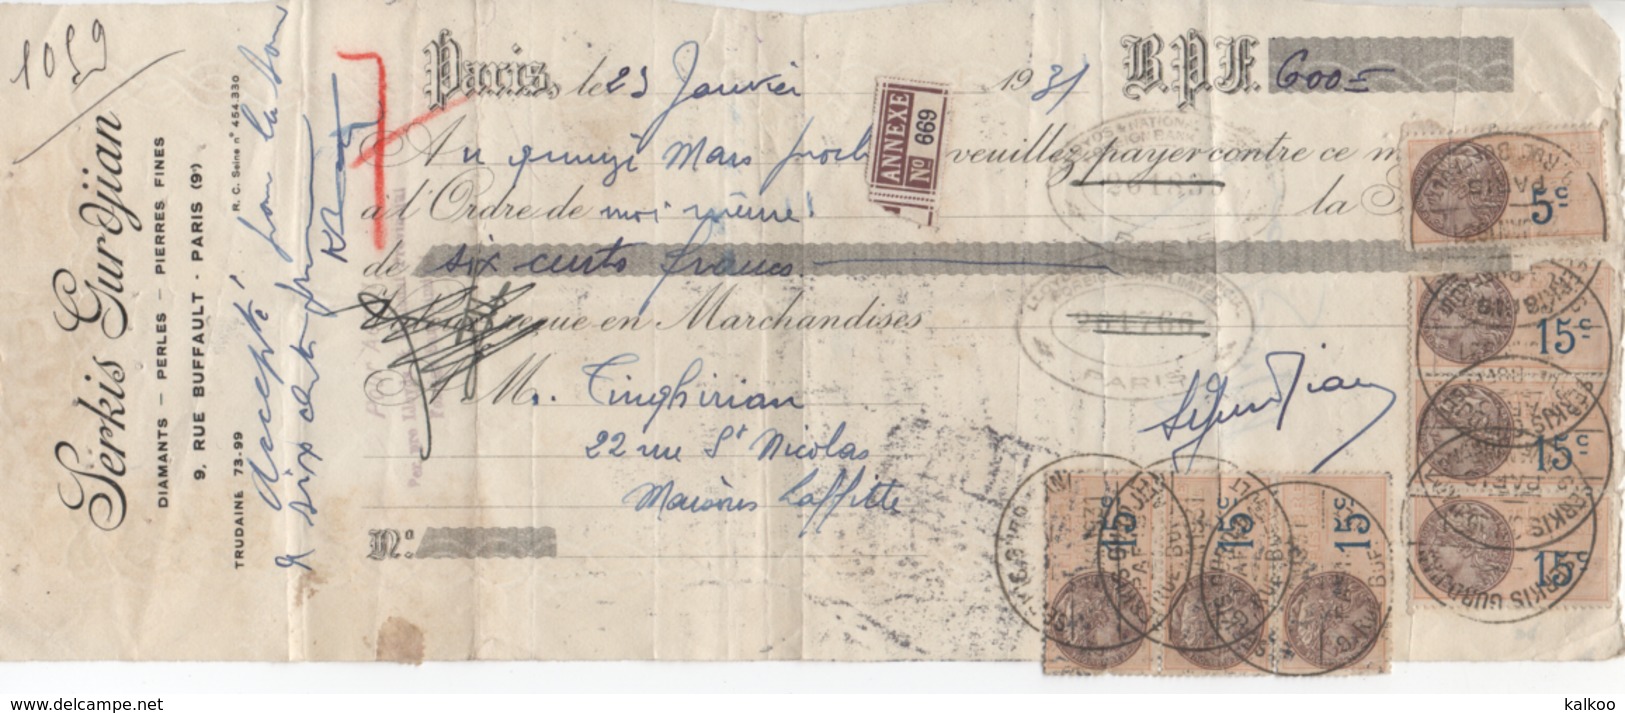 Lettre De Change ( Serkis Gurdjian // Diamants - Perles - Pierres Fines // Paris 9 ) 1931 - Bills Of Exchange